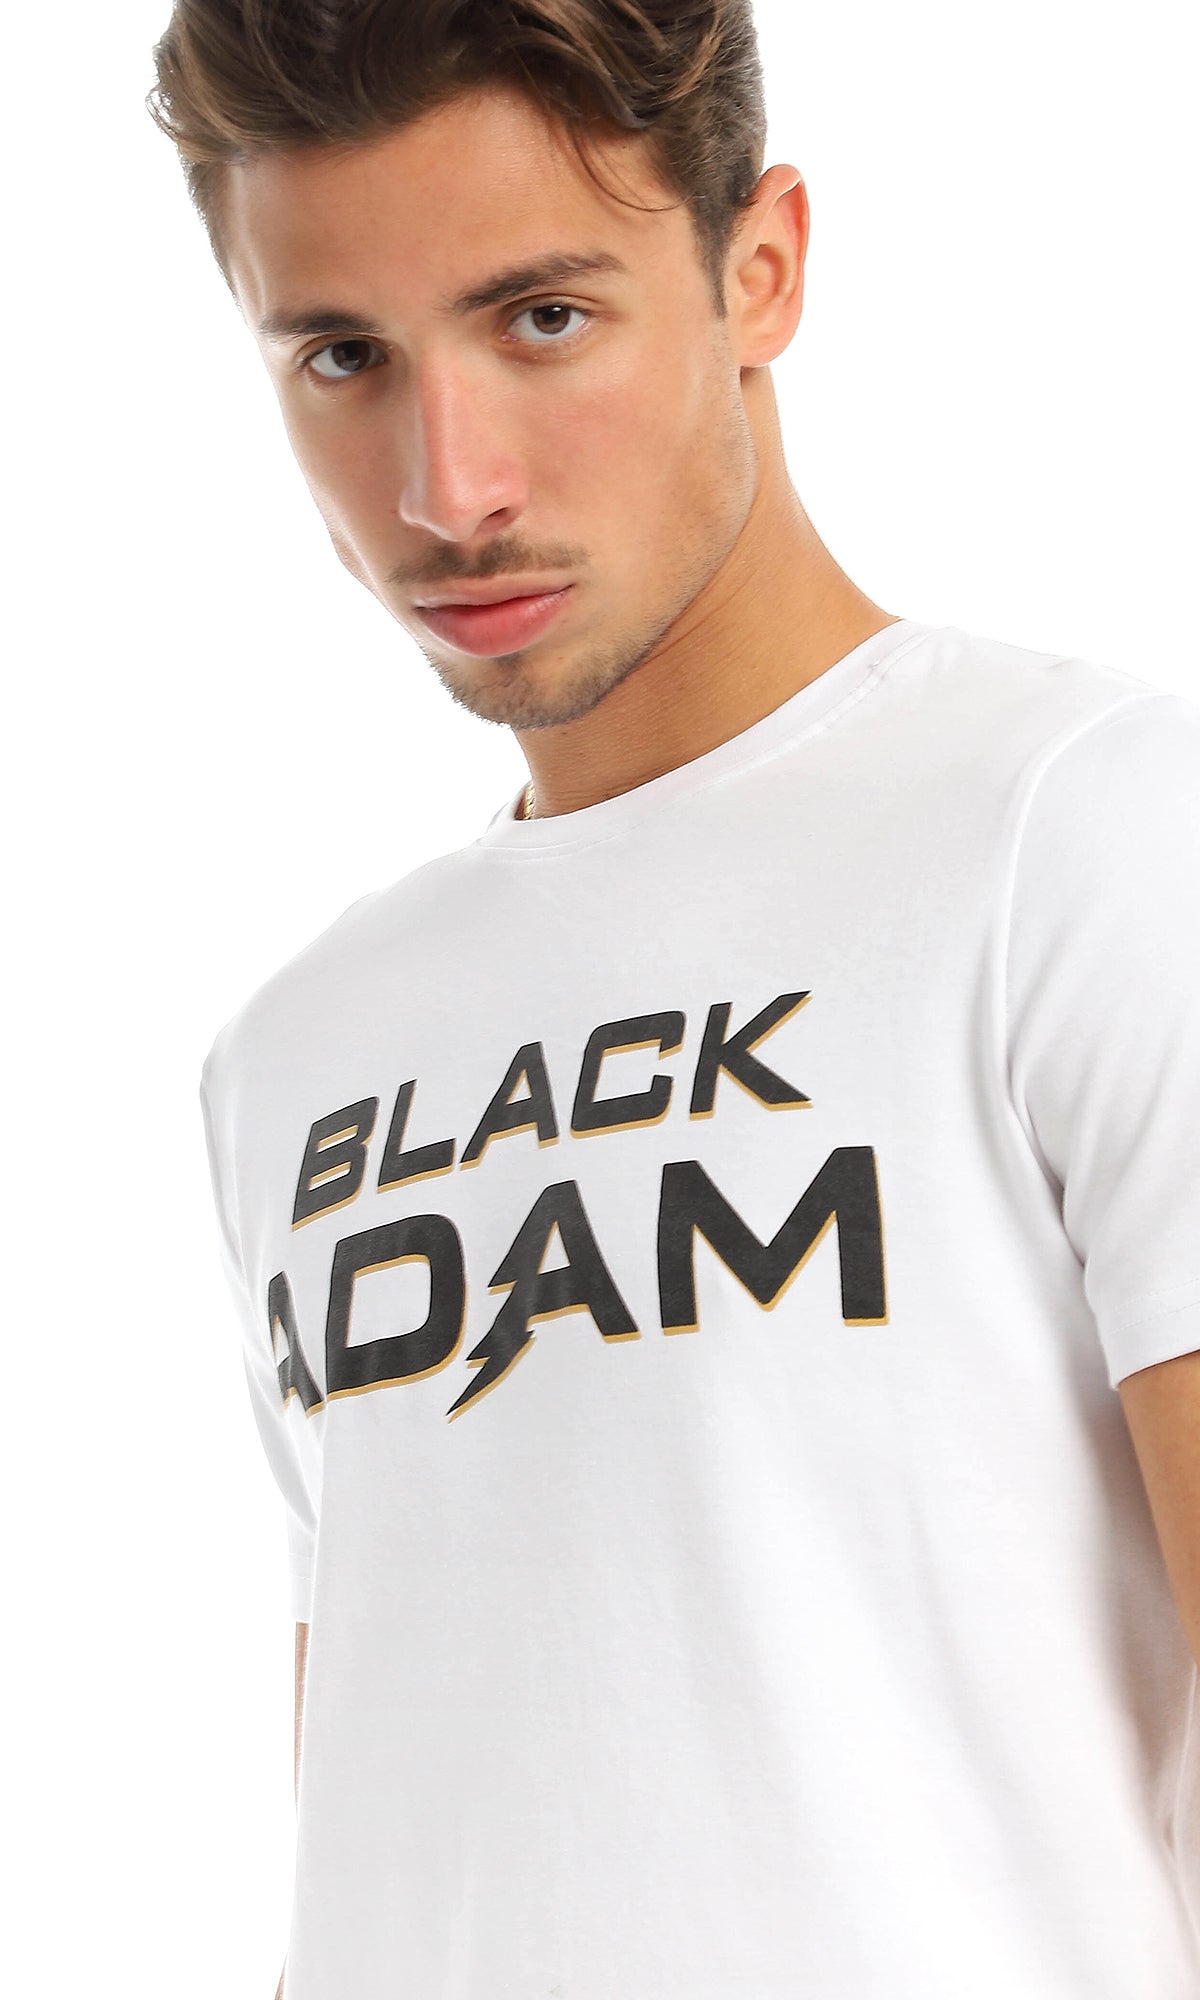 تي شيرت بياقة مستديرة بطباعة "Black Adam" أبيض